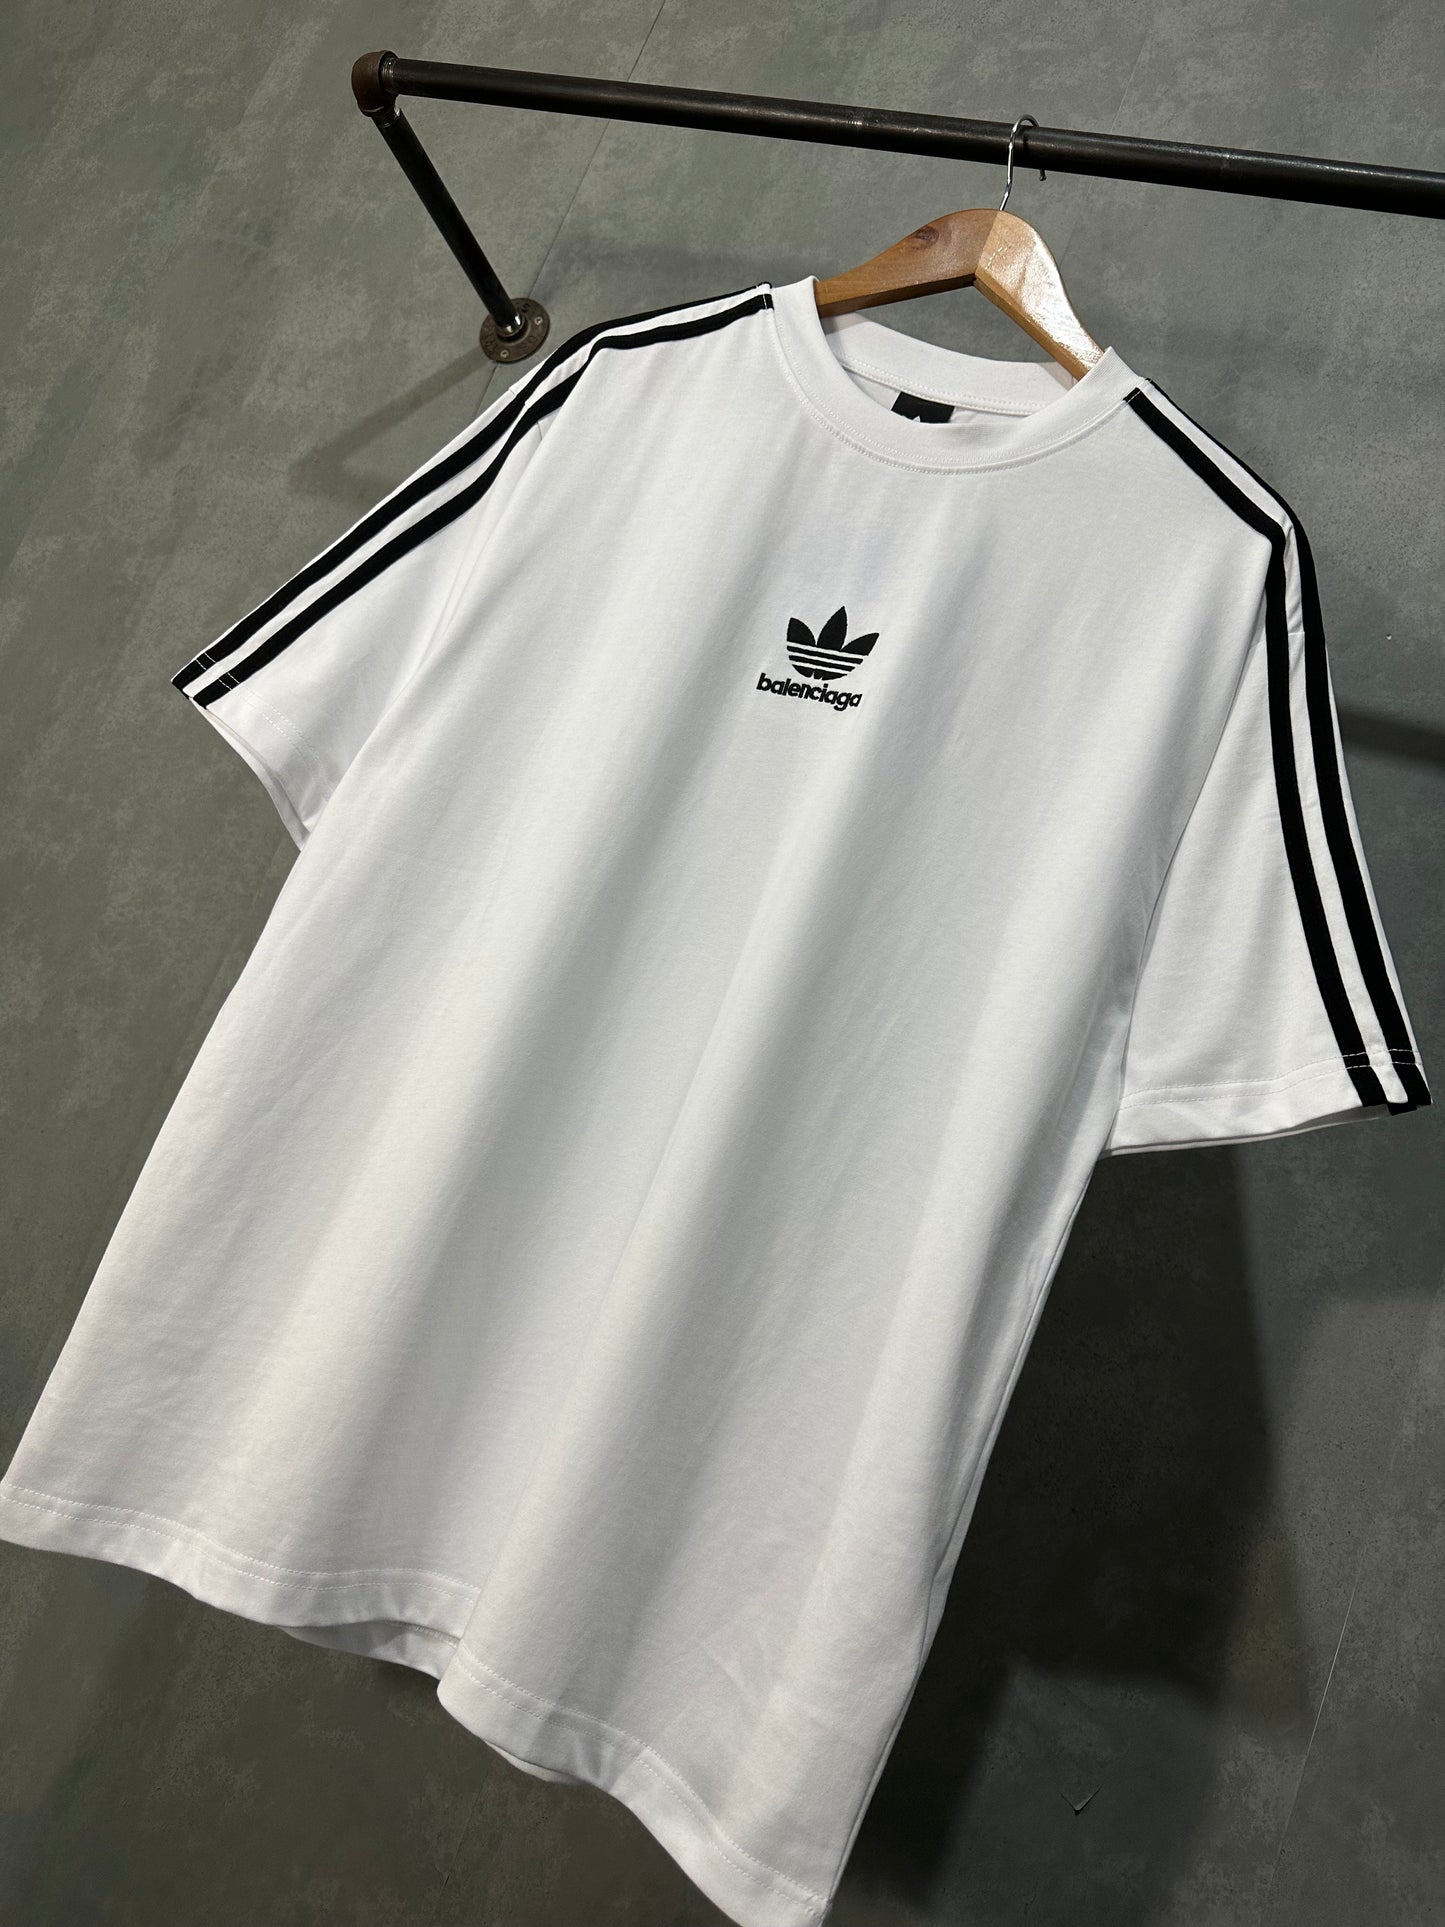 Balenciaga / Adidas T-Shirt (White)